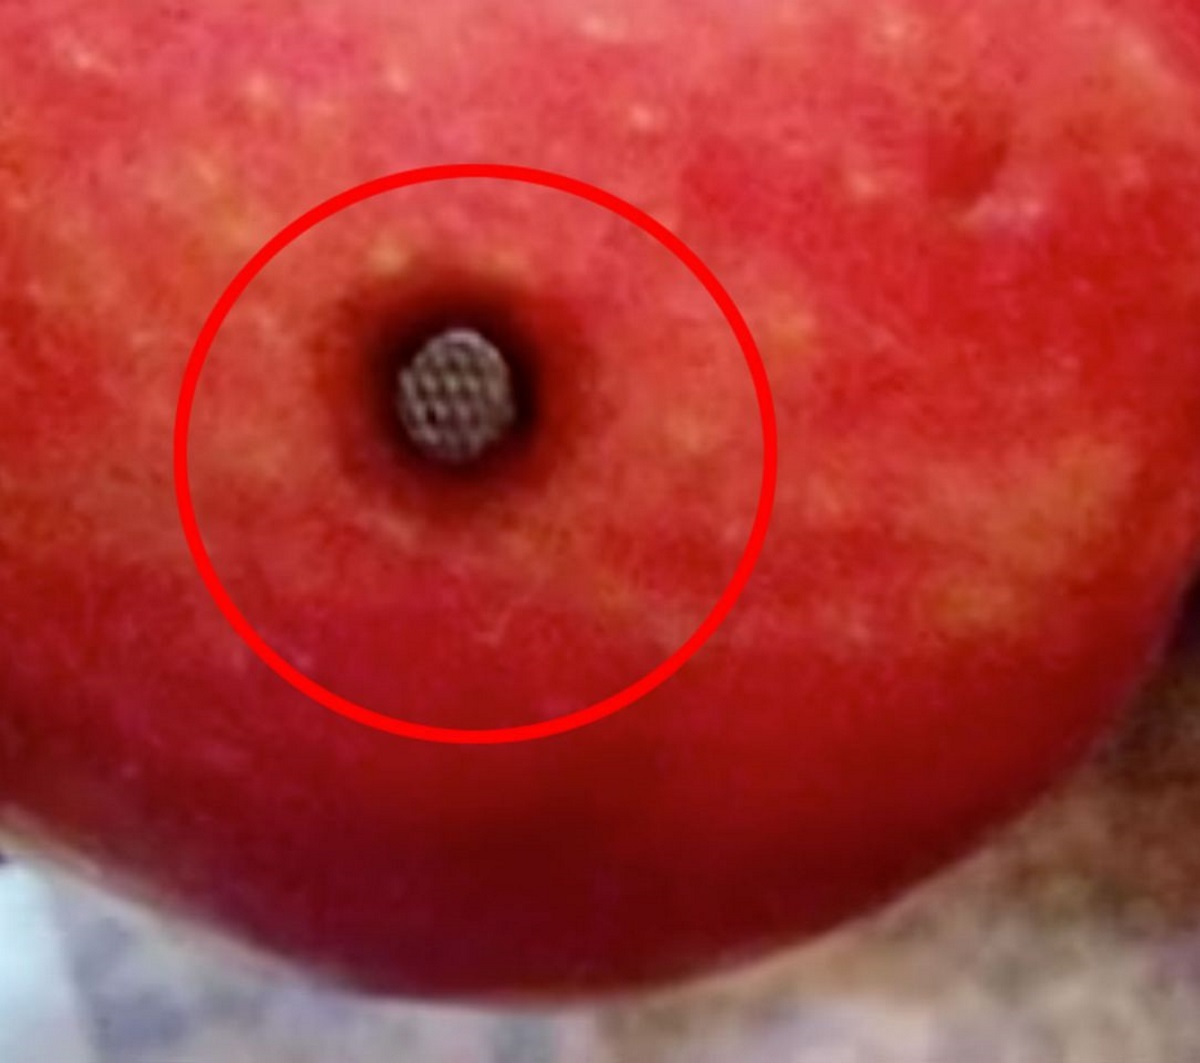 Μητέρα βρήκε καρφί μέσα σε μήλο λίγο πριν το φάνε τα παιδιά της!